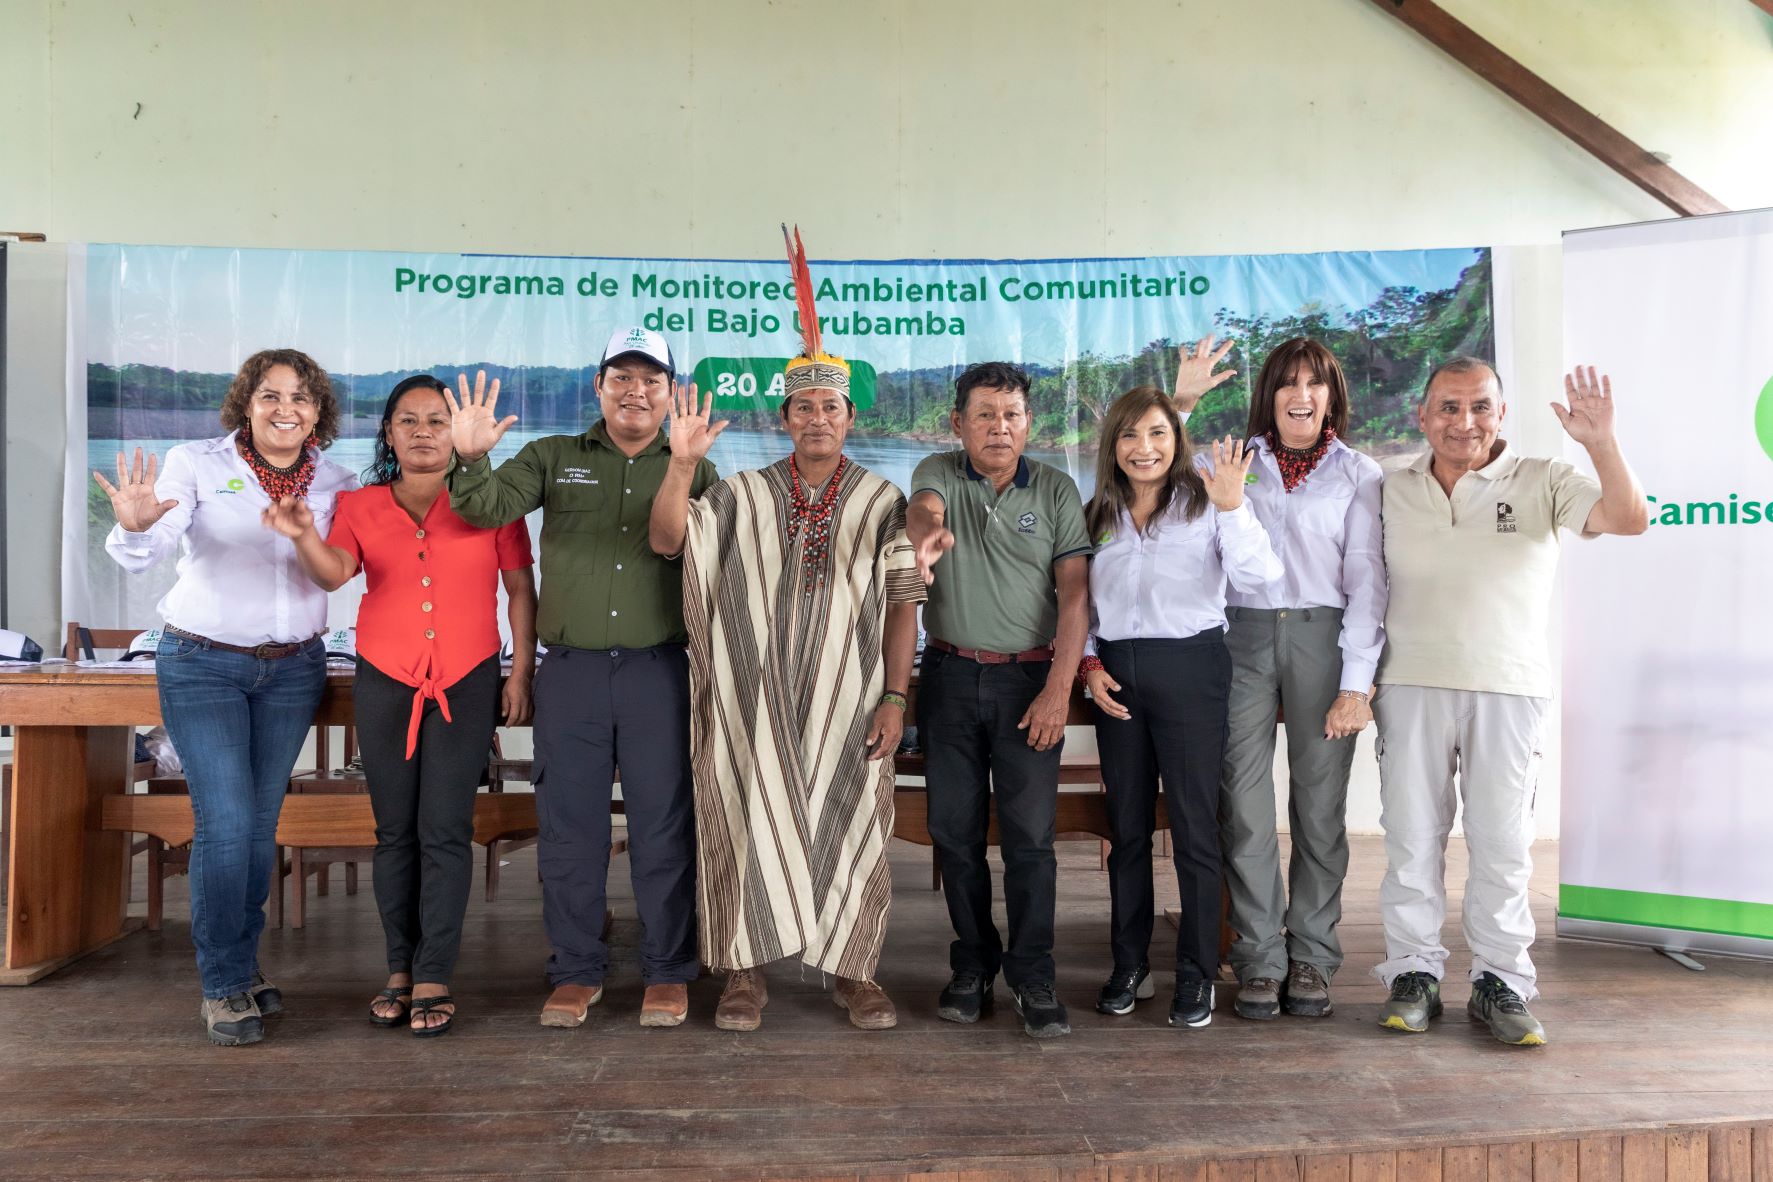 En 20 años, Programa de Monitoreo Ambiental Comunitario ha formado 50 líderes de vigilancia comunitaria en el Bajo Urubamba